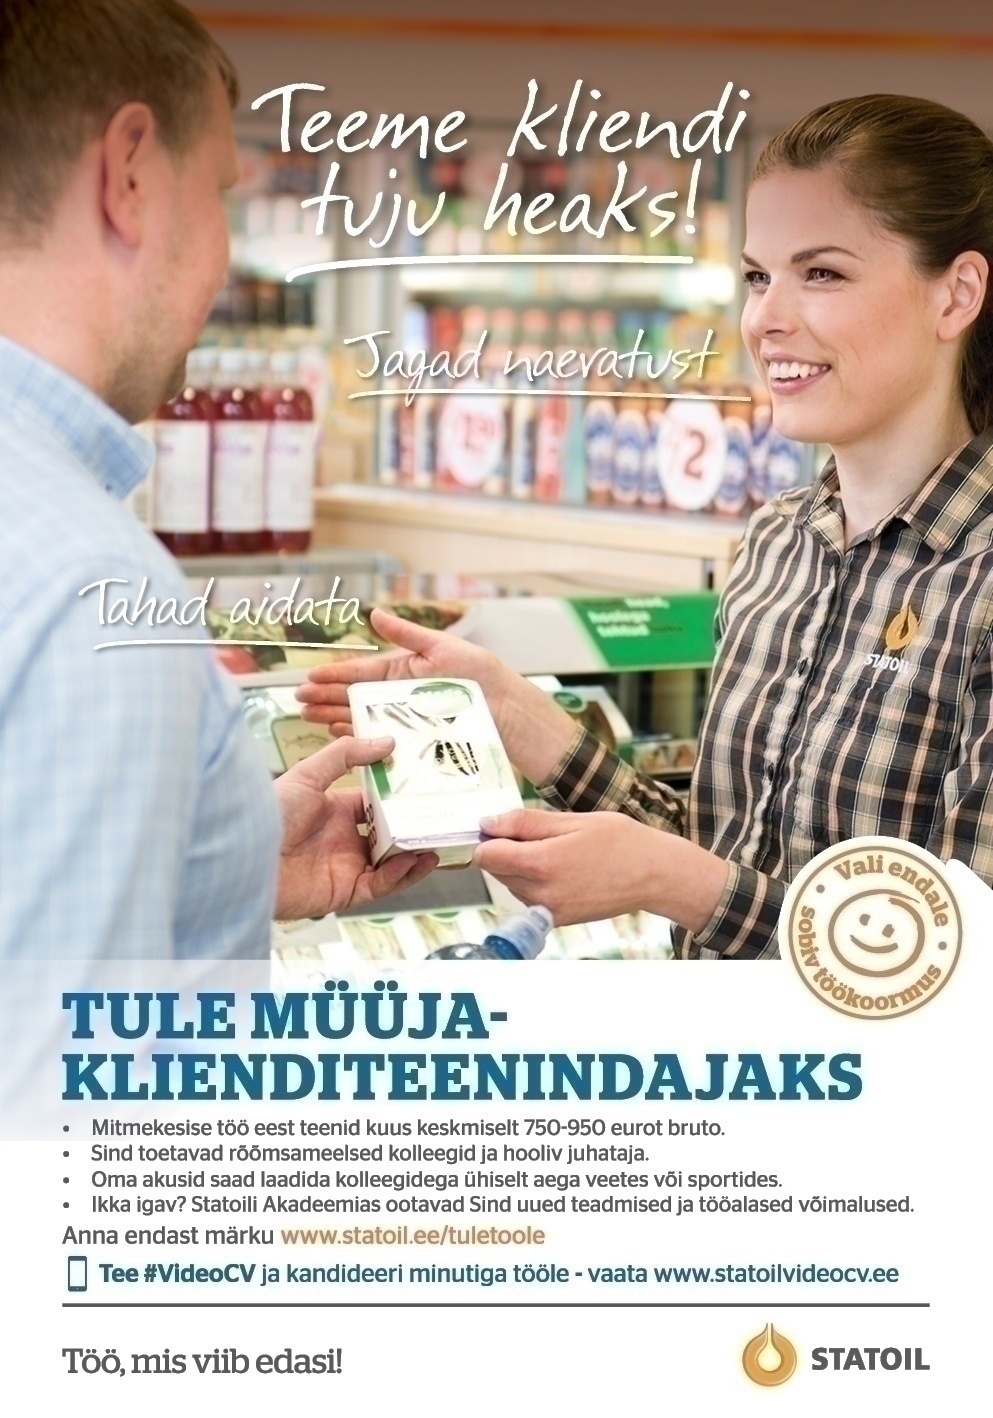 Circle K Eesti AS Müüja-klienditeenindaja Nõmme ja Järve teenindusjaama